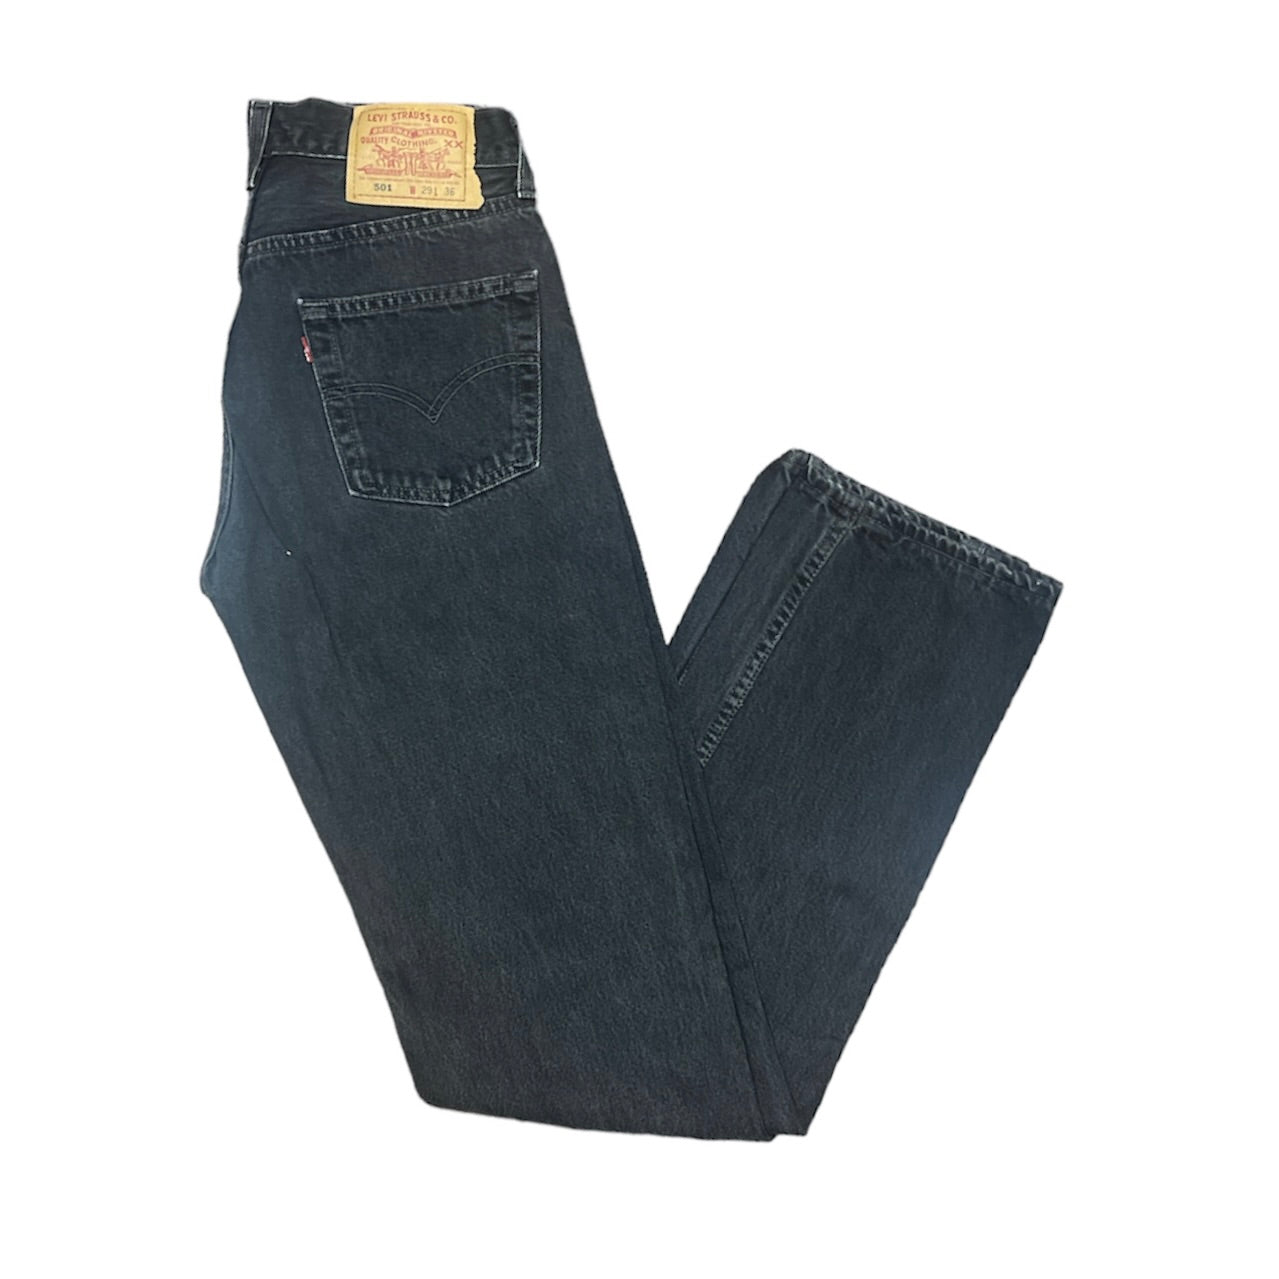 Vintage Levis 501 Black Jeans (W29/L36)